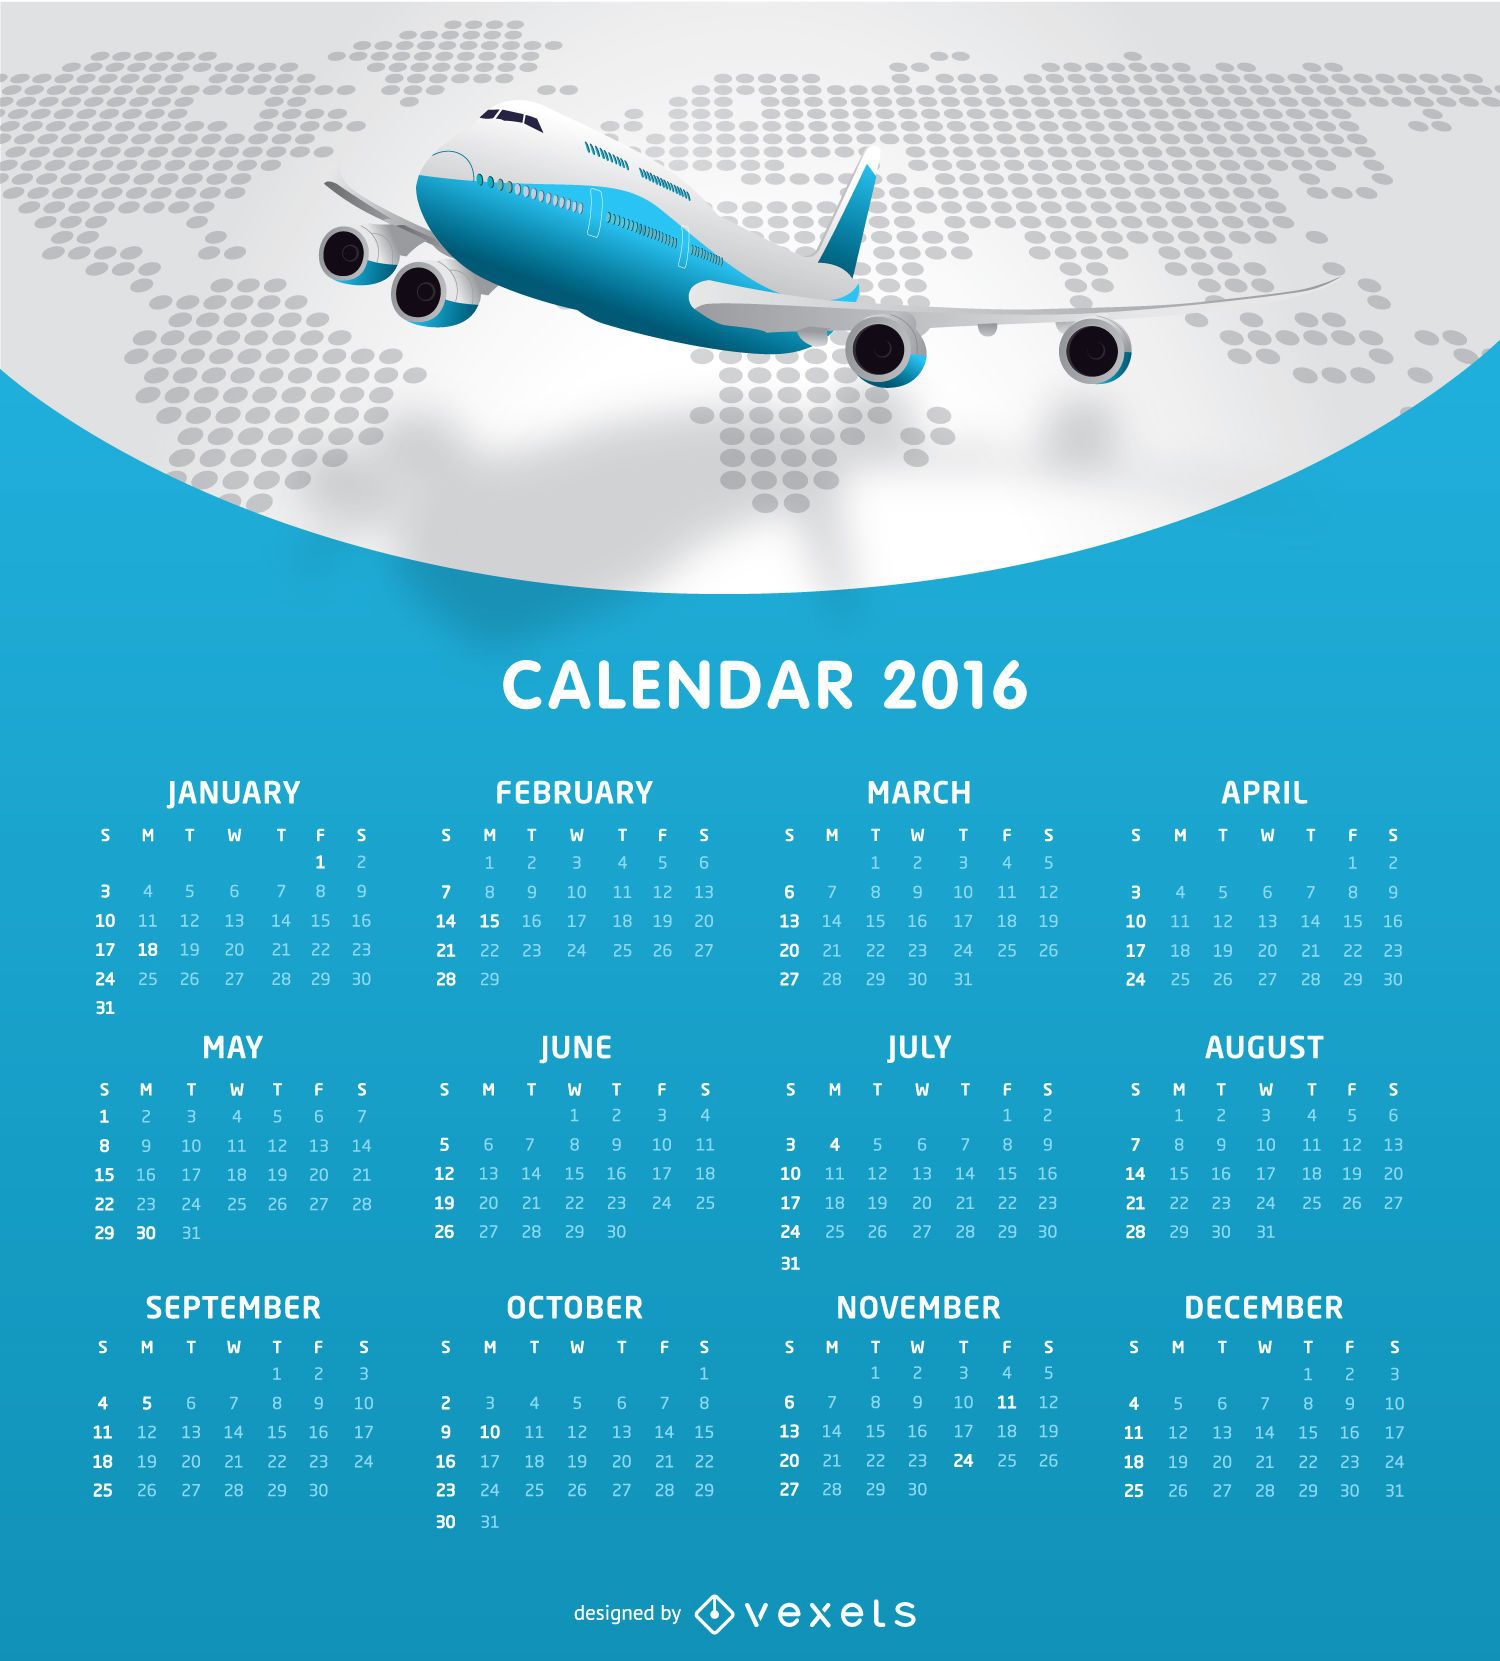 Tempalte do calendário da Airlines 2016